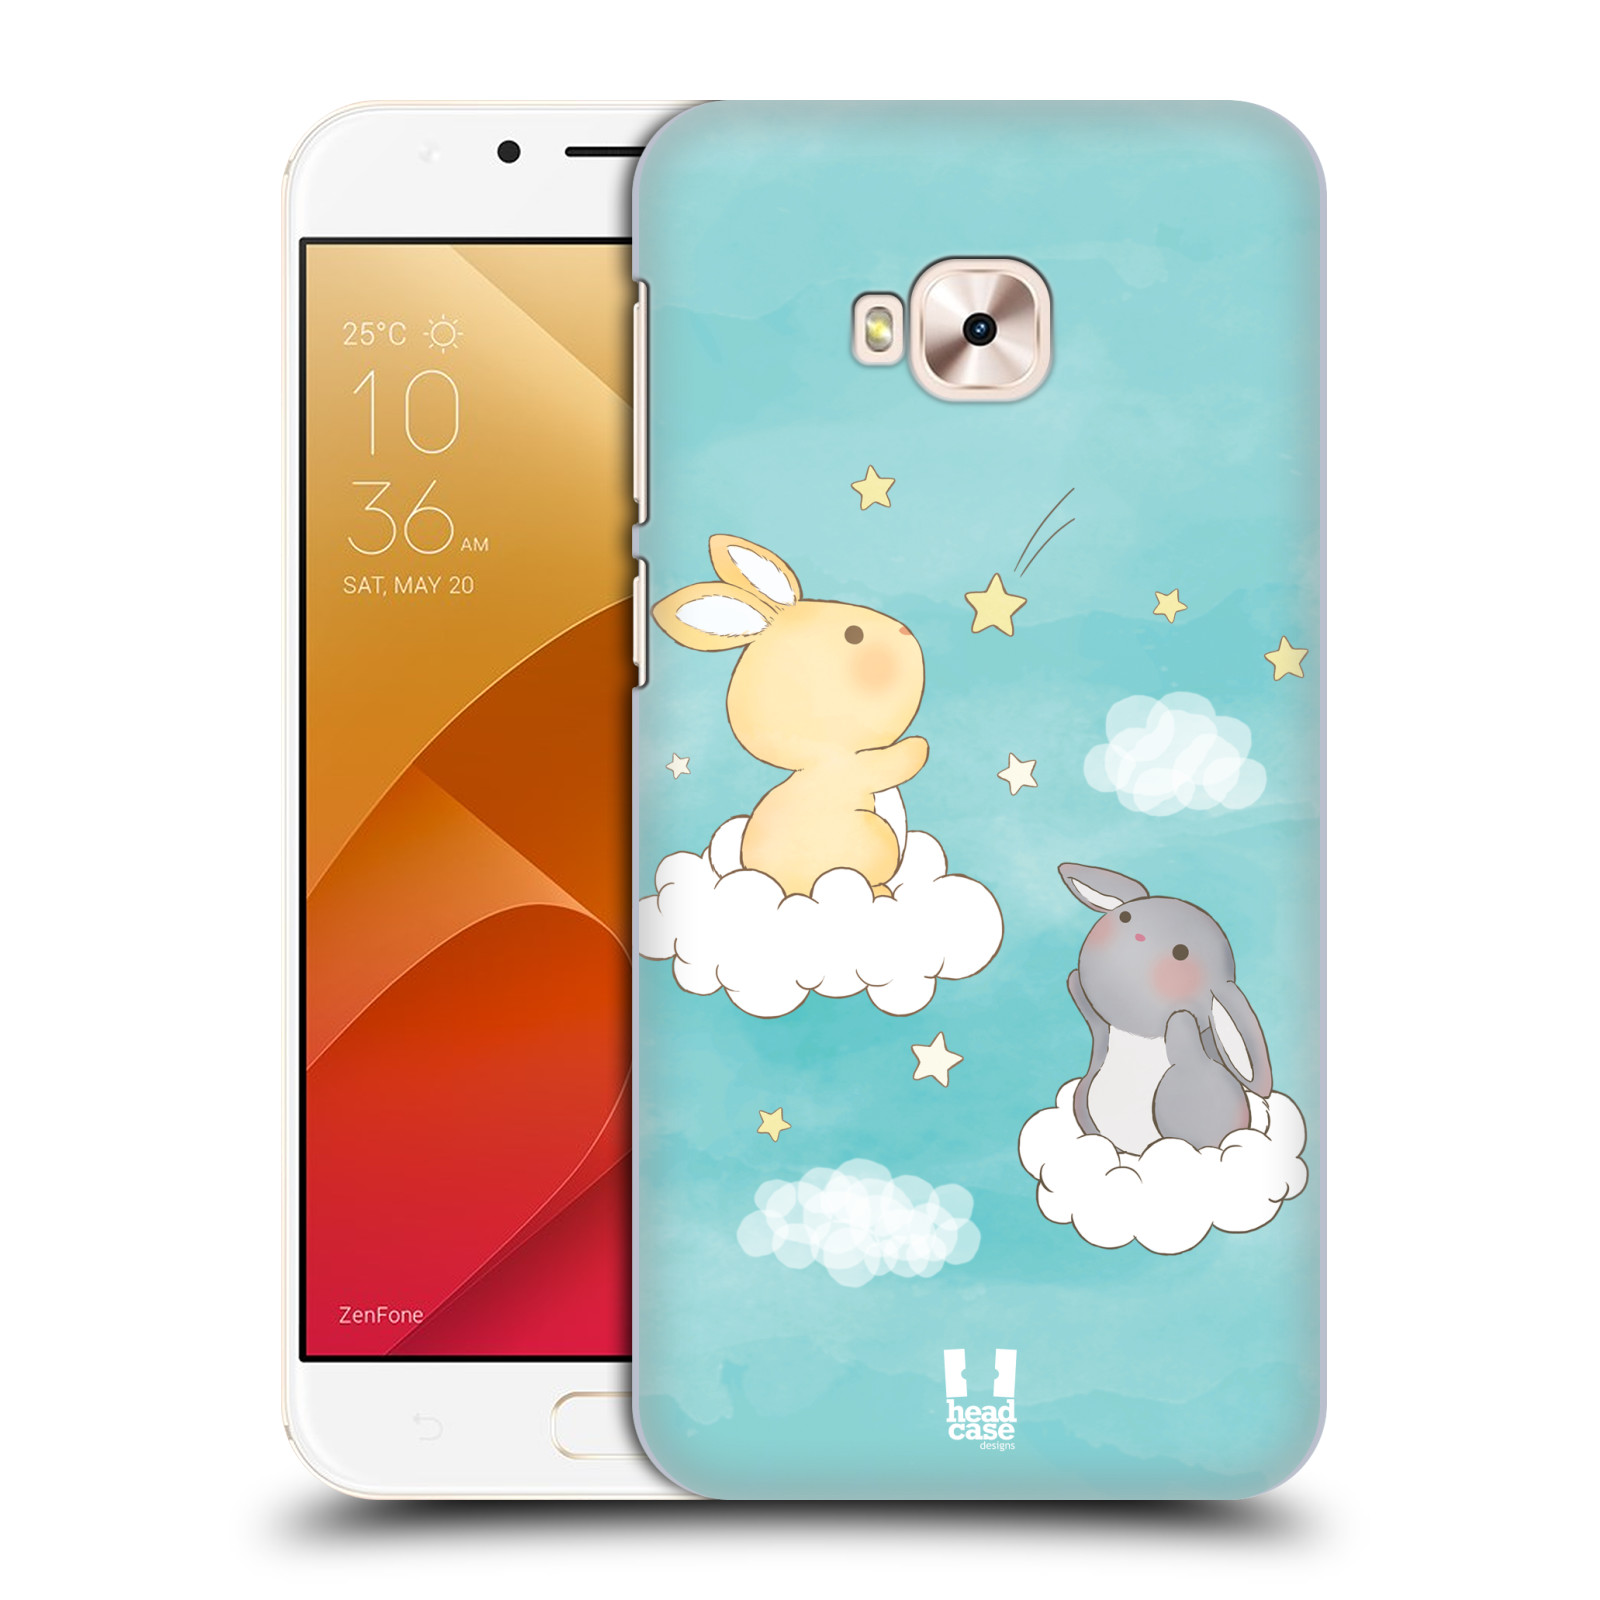 HEAD CASE plastový obal na mobil Asus Zenfone 4 Selfie Pro ZD552KL vzor králíček a hvězdy modrá